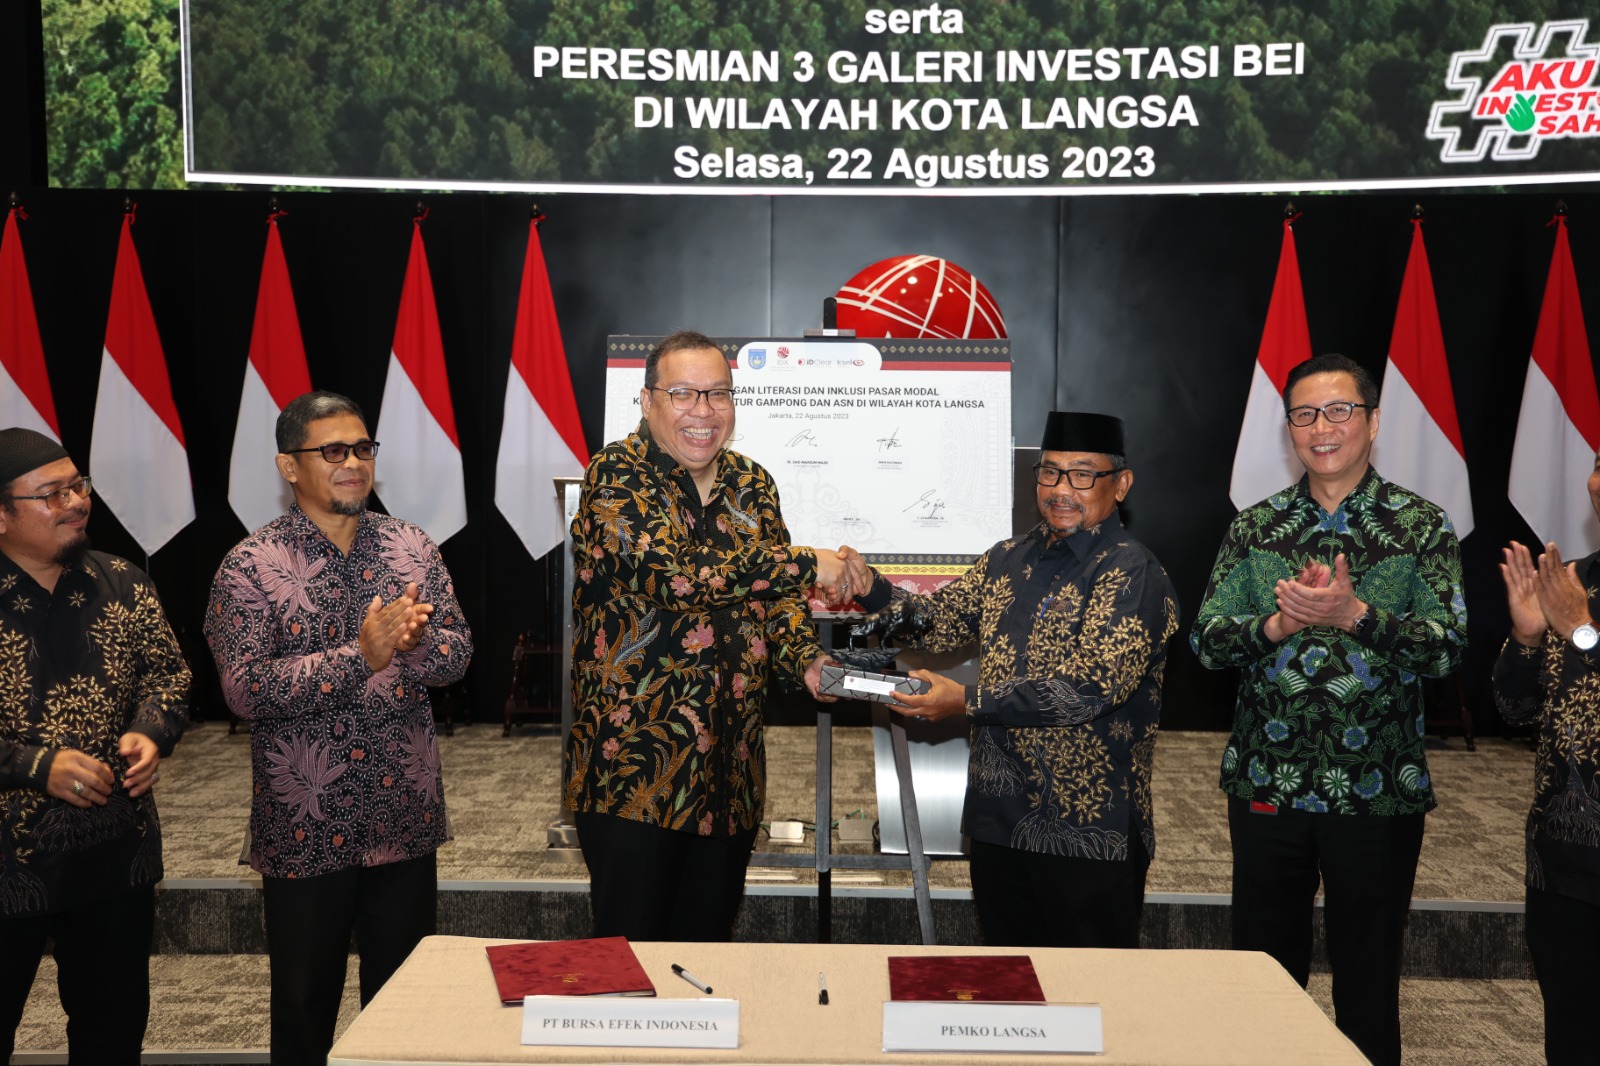 Pemerintah Kota Langsa Melakukan Penandatanganan MOU Dengan PT Bursa Efek Indonesia